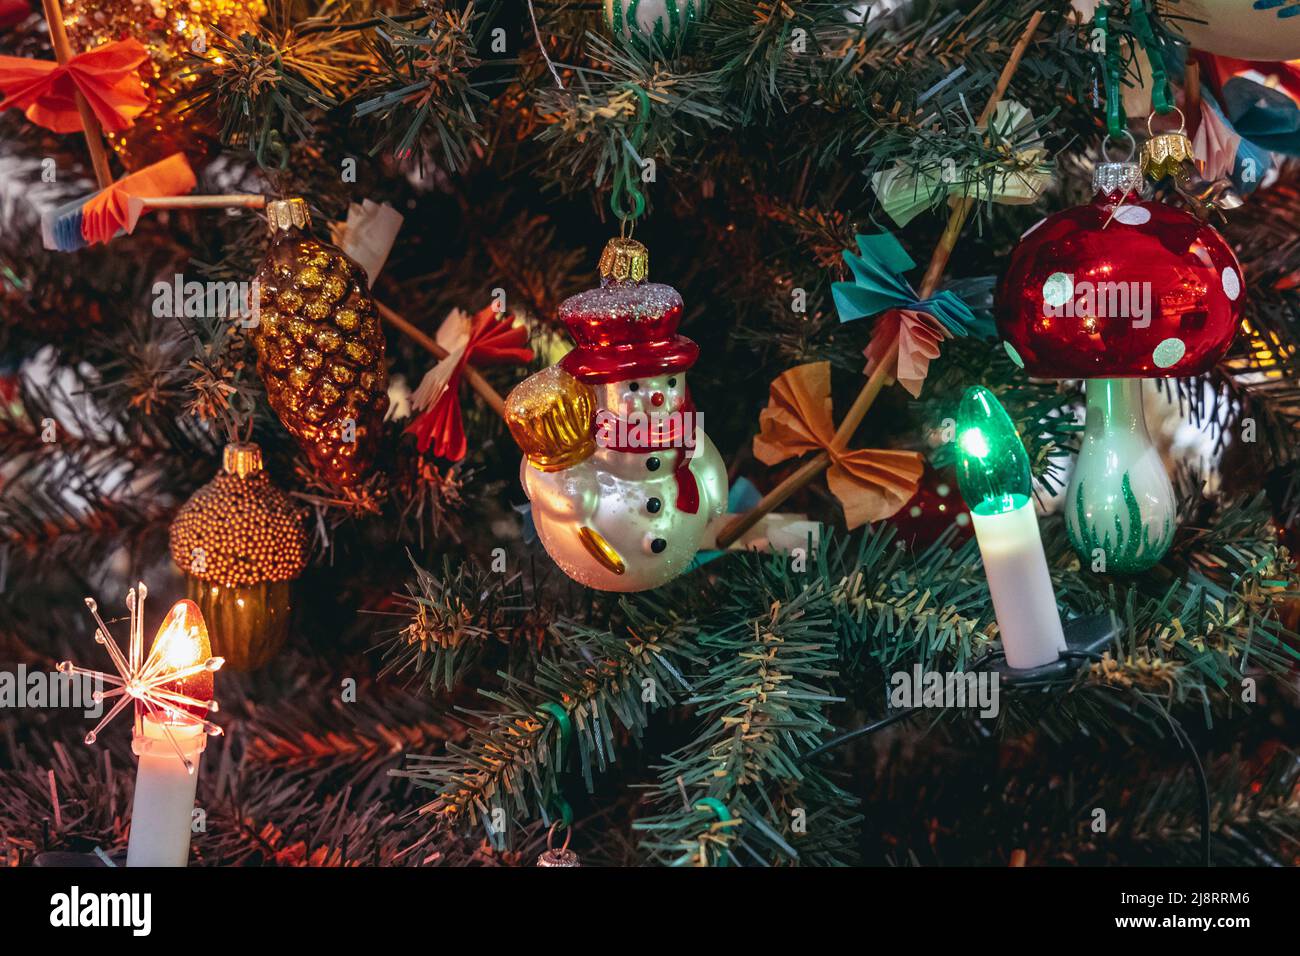 Traditioneller polnischer Weihnachtsbaum im Museum für Weihnachten  Glasornamente in der Stadt Nowa Deba, Woiwodschaft Subkarpaten in Polen  Stockfotografie - Alamy